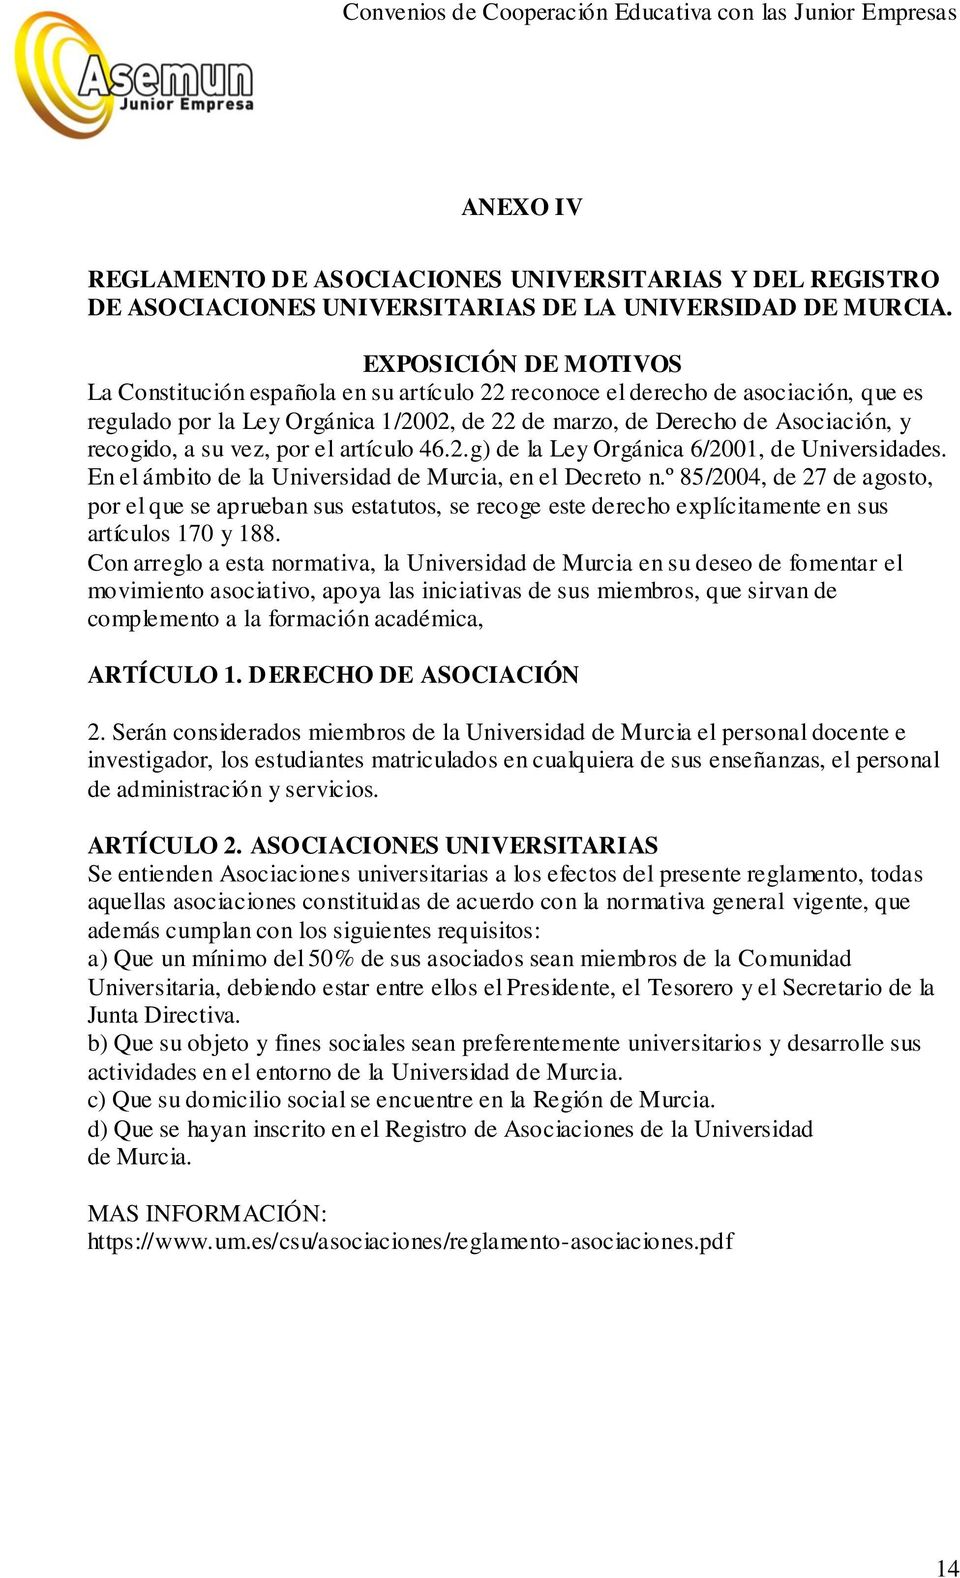 su vez, por el artículo 46.2.g) de la Ley Orgánica 6/2001, de Universidades. En el ámbito de la Universidad de Murcia, en el Decreto n.